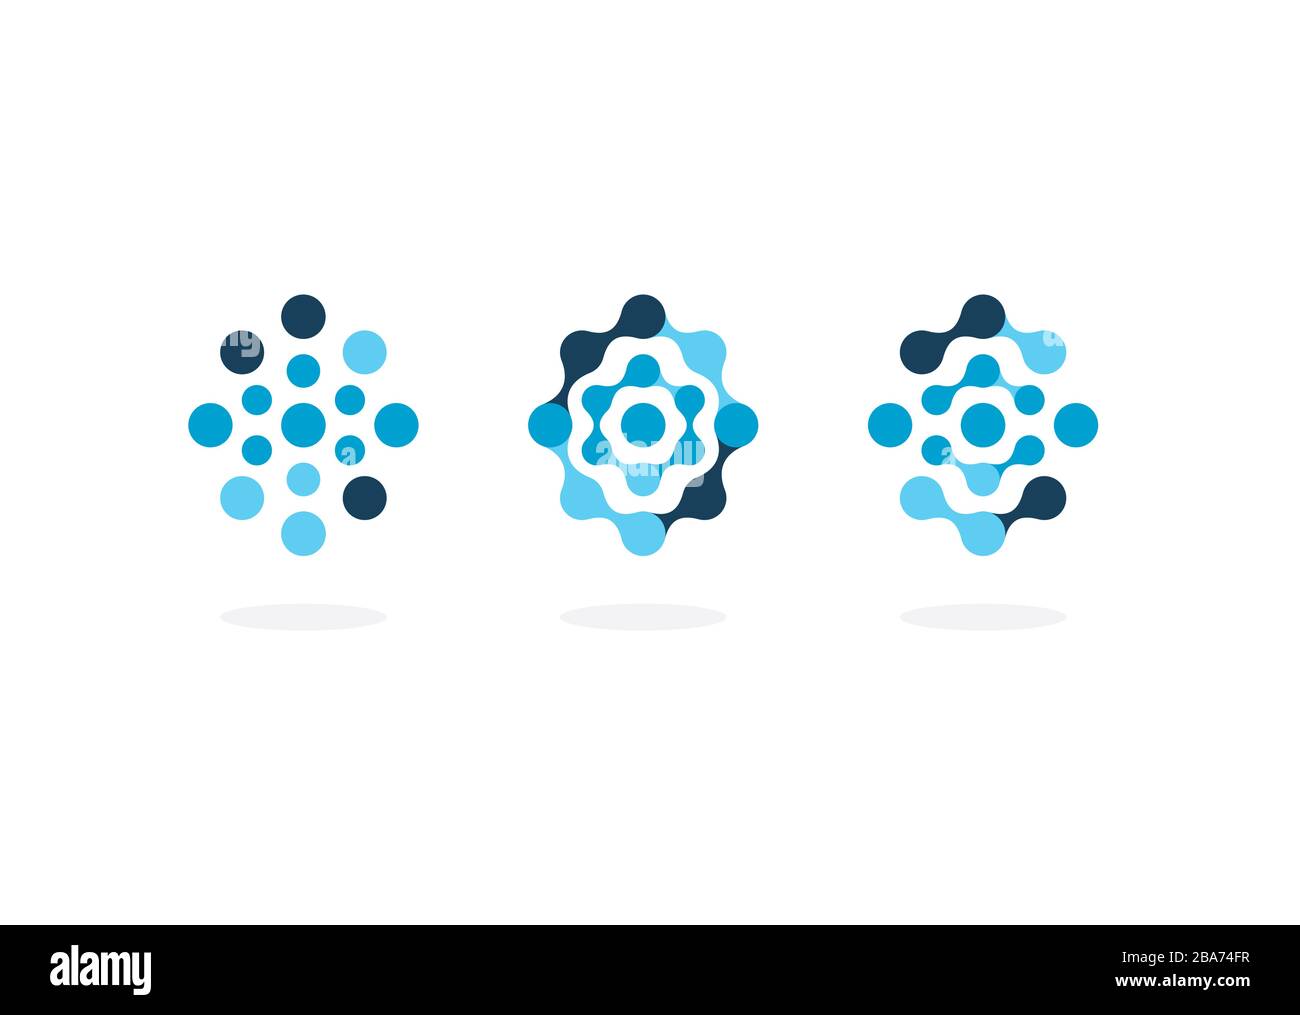 Symbolsatz für abstrakte Moleküle, blaue Kreise, Vorlage für ovales Logo, flaches abstraktes Emblem. Konzept Logotyp Design für Wirtschaft, Wissenschaft, Medizin und Technik Stock Vektor